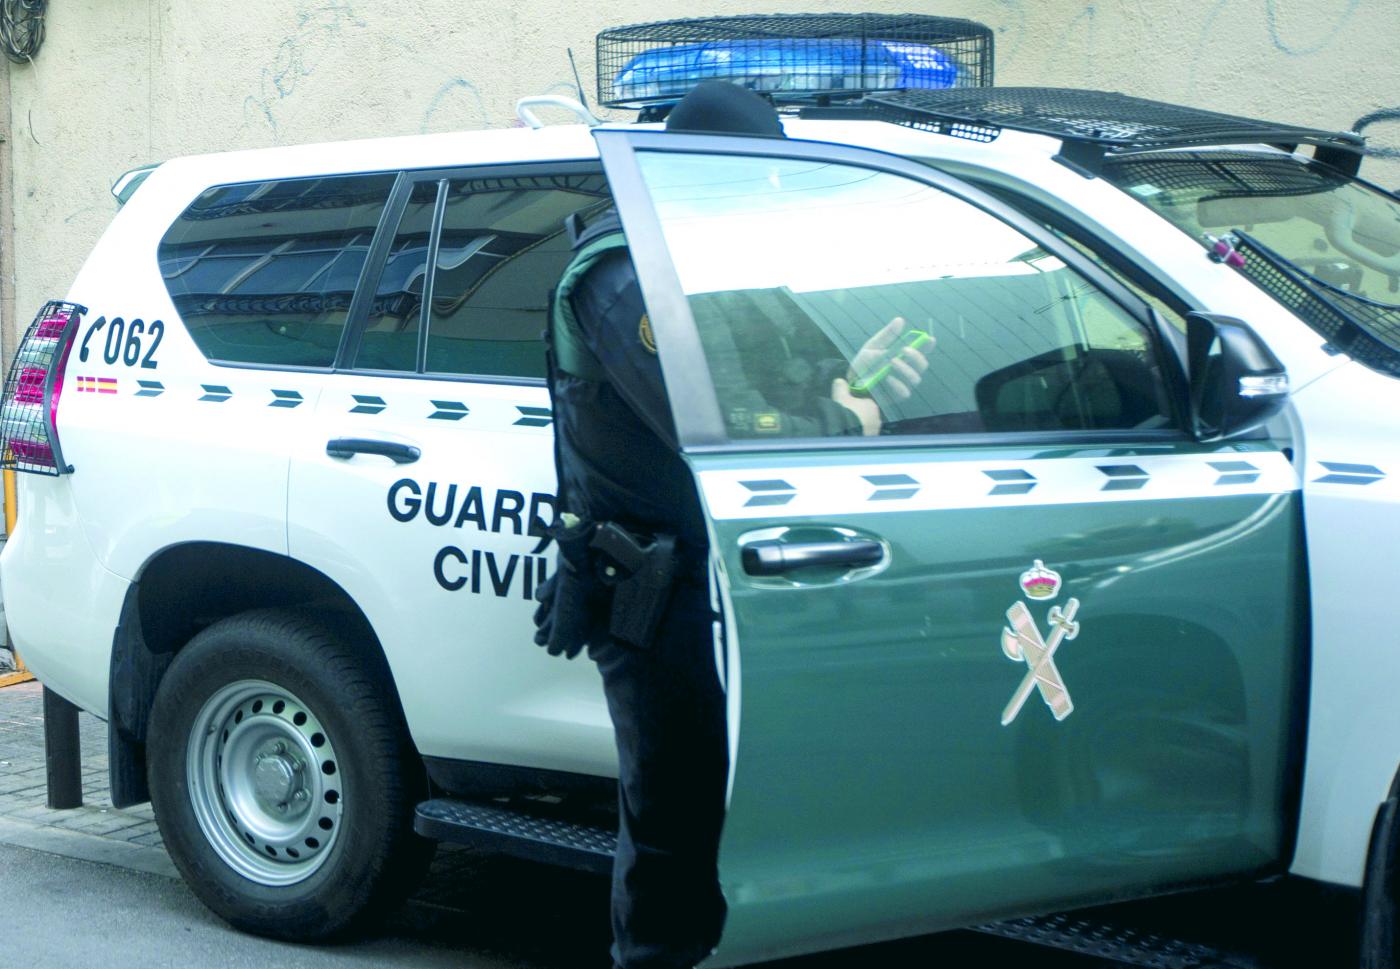 36 detenidos en tres operaciones anti-drogra de la Guardia Civil en La Axarquía